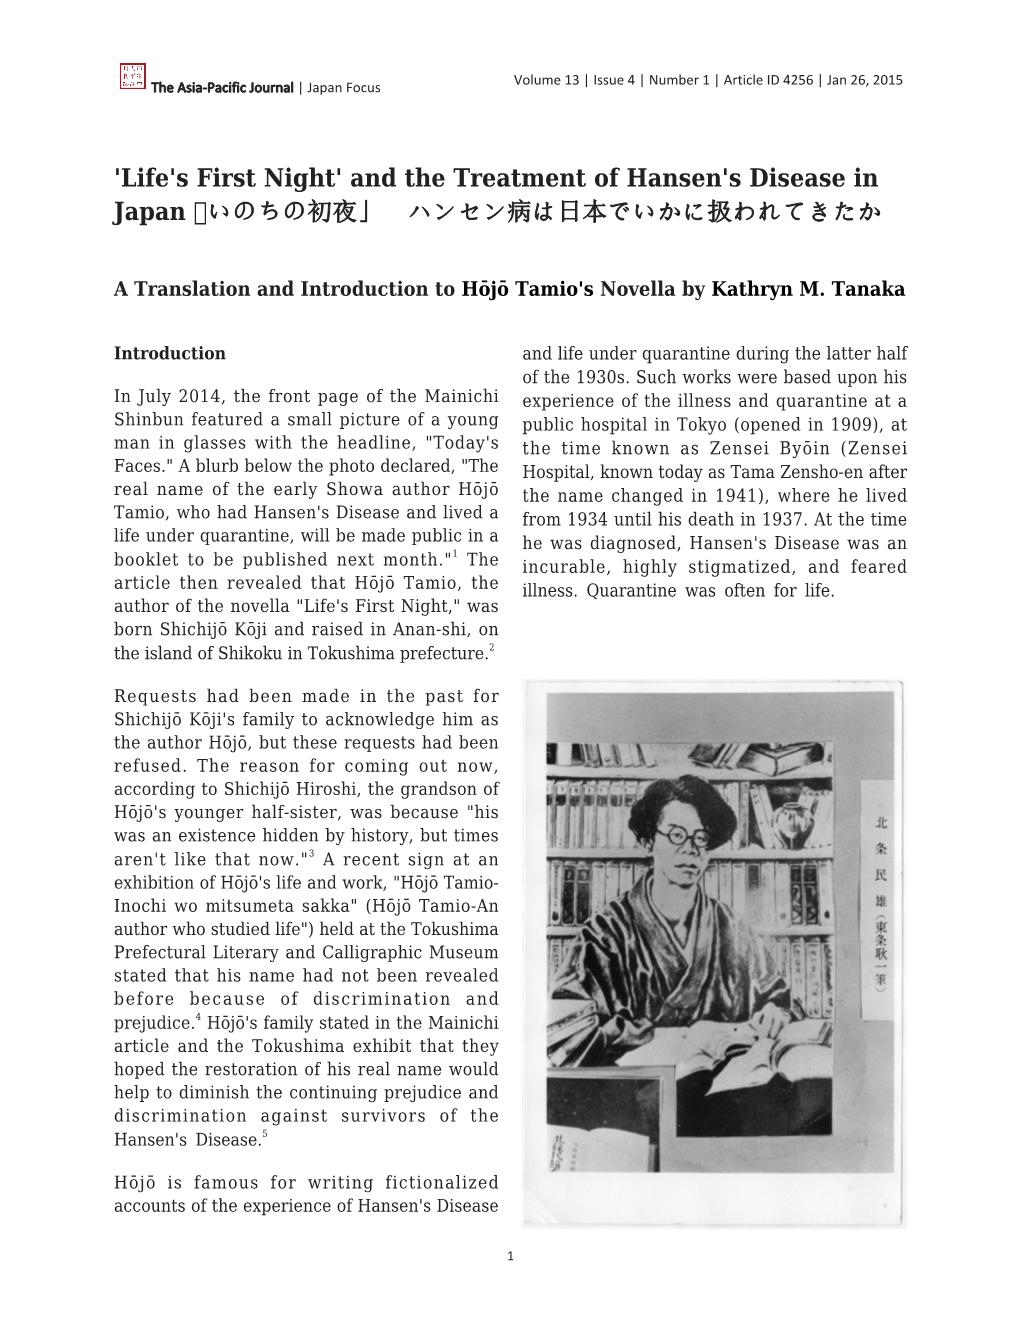 And the Treatment of Hansen's Disease in Japan 「いのちの初夜」 ハンセン病は日本でいかに扱われてきたか